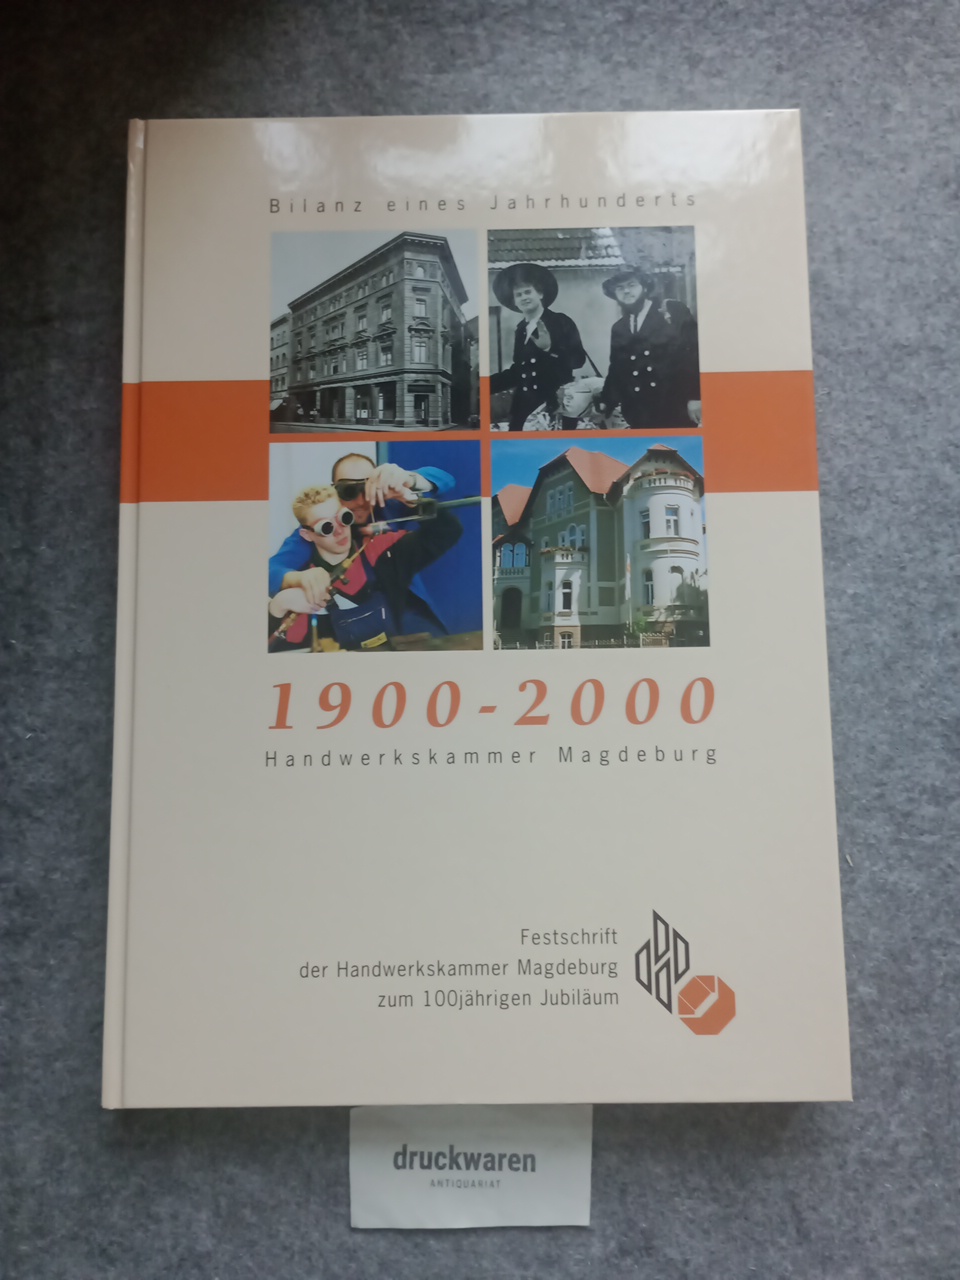 Bilanz eines Jahrhunderts, 1900 - 2000, Handwerkskammer Magdeburg : Festschrift der Handwerkskammer Magdeburg zum 100jährigen Jubiläum. - Knoblauch, Christa (Herausgeber)